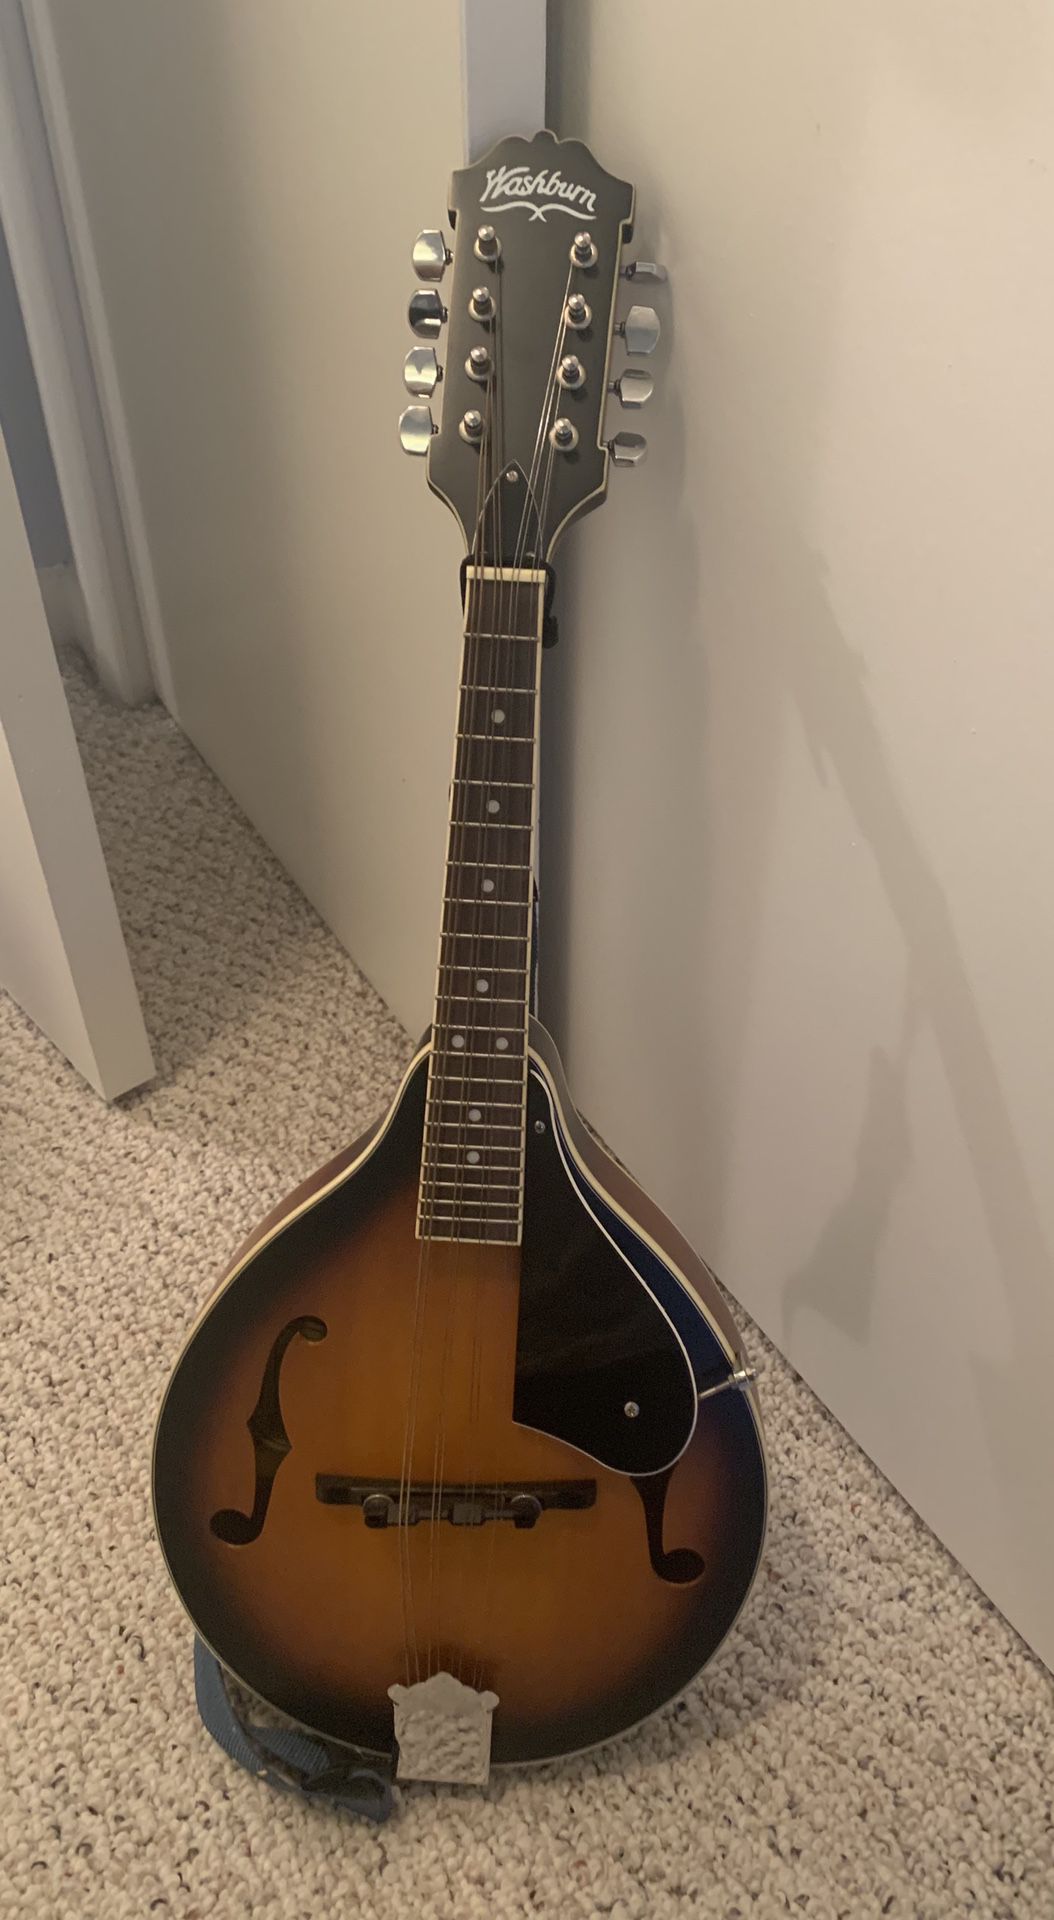 New Washburn MIK Mandolin Guitar